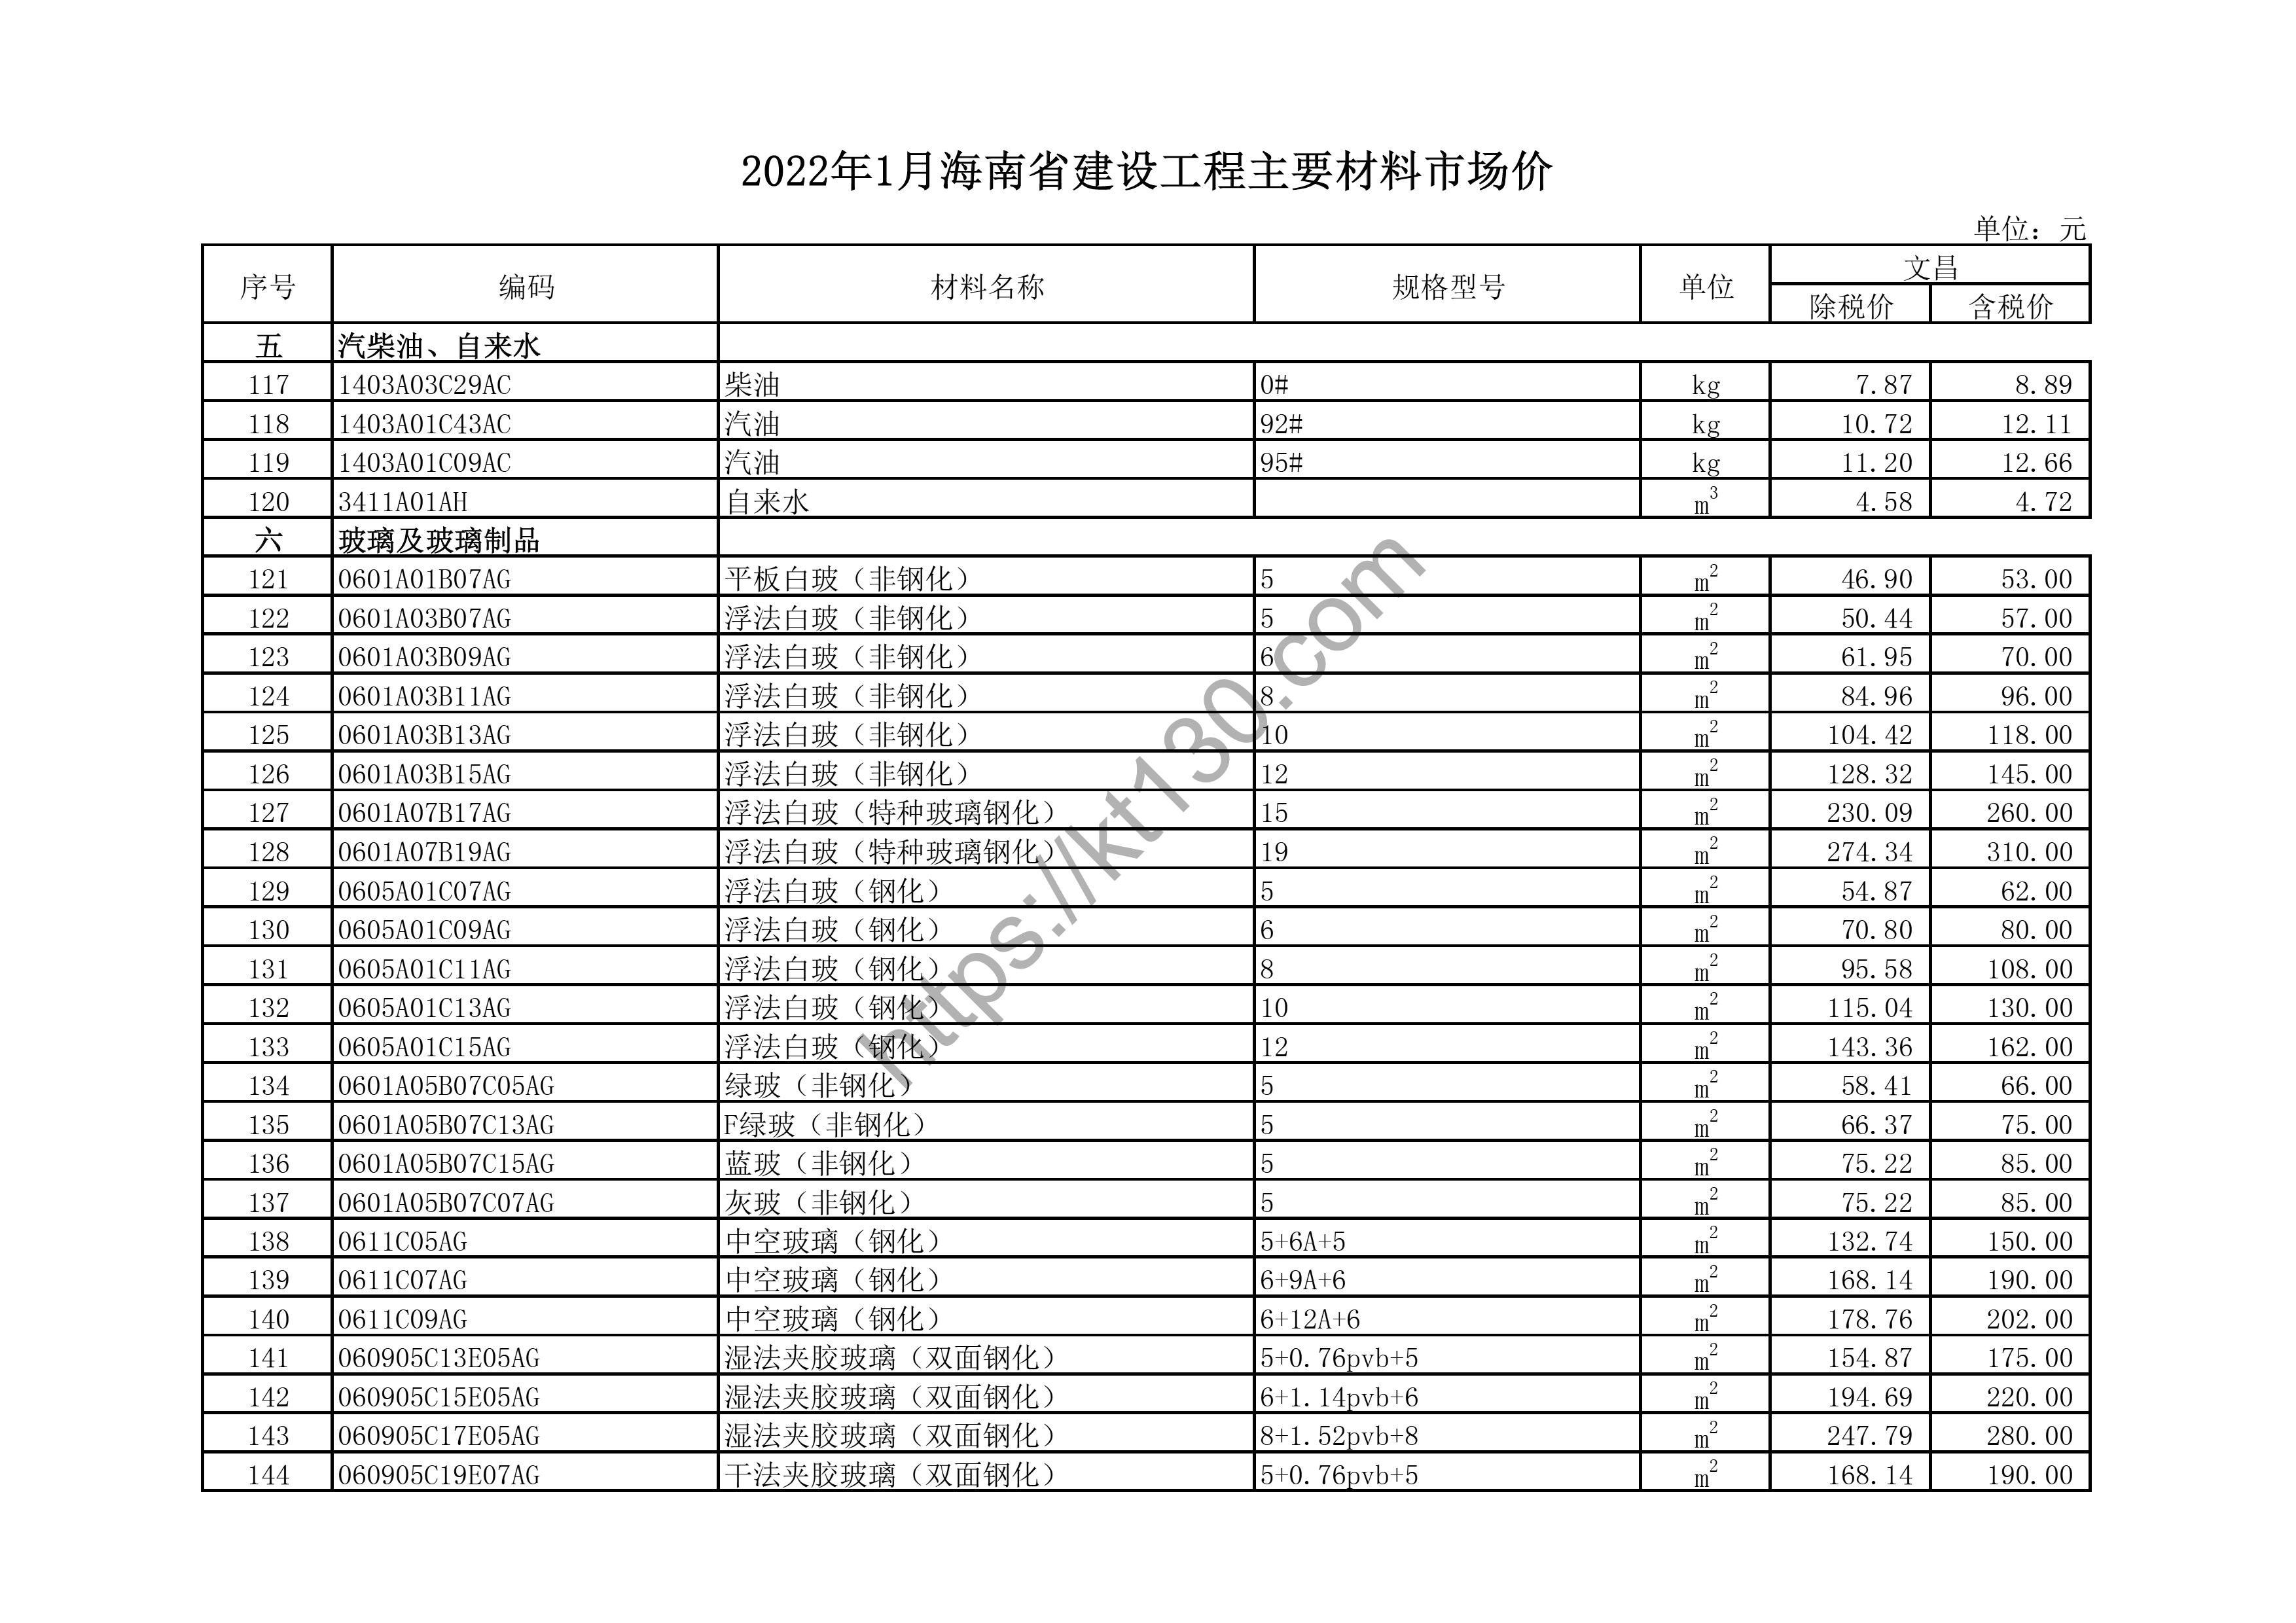 海南省2022年1月建筑材料价_钢化玻璃_43639